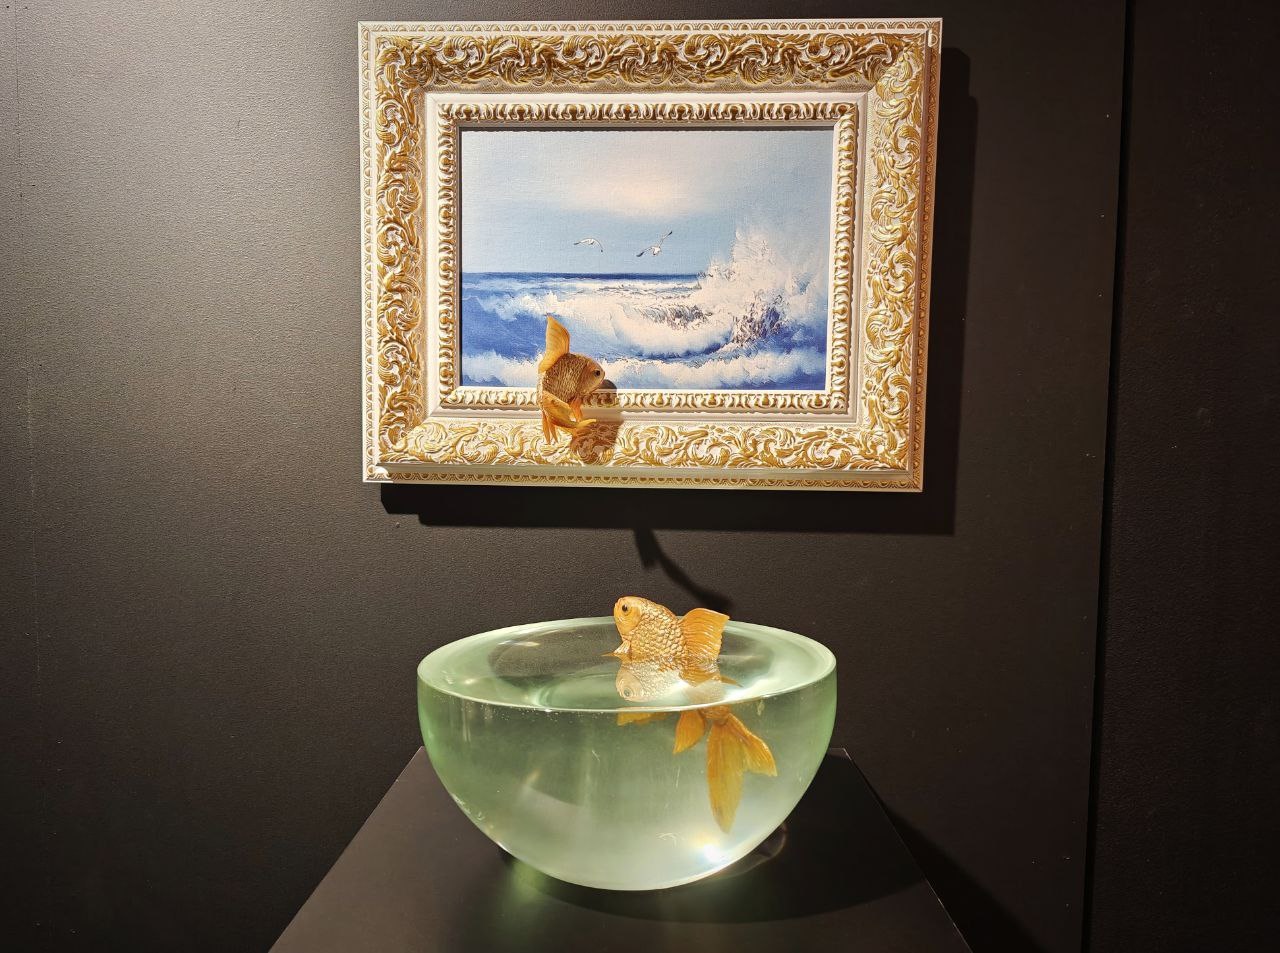 Охранник на выставке Бэнкси съел золотую рыбку с картины, фото